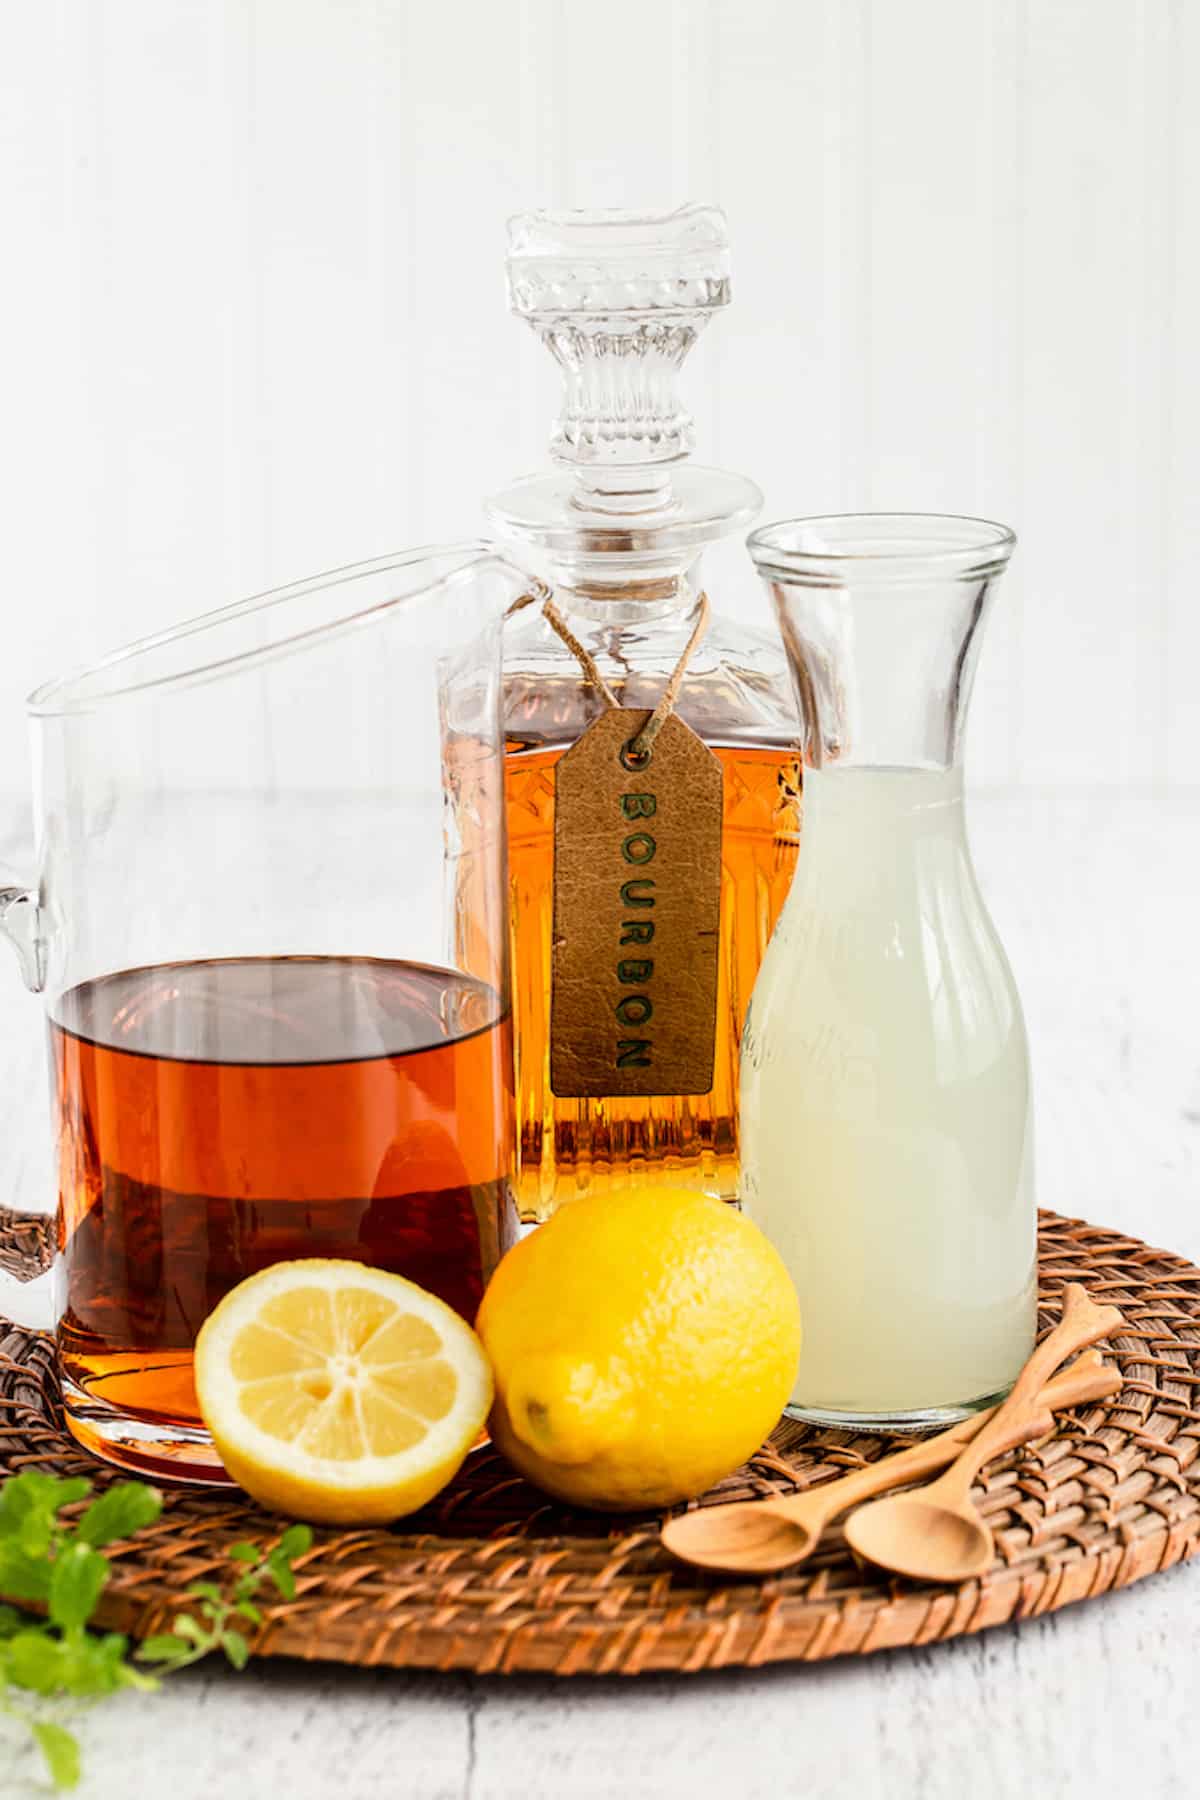 Bourbon, iced tea and lemonade set on a wicker tray with fresh lemons.